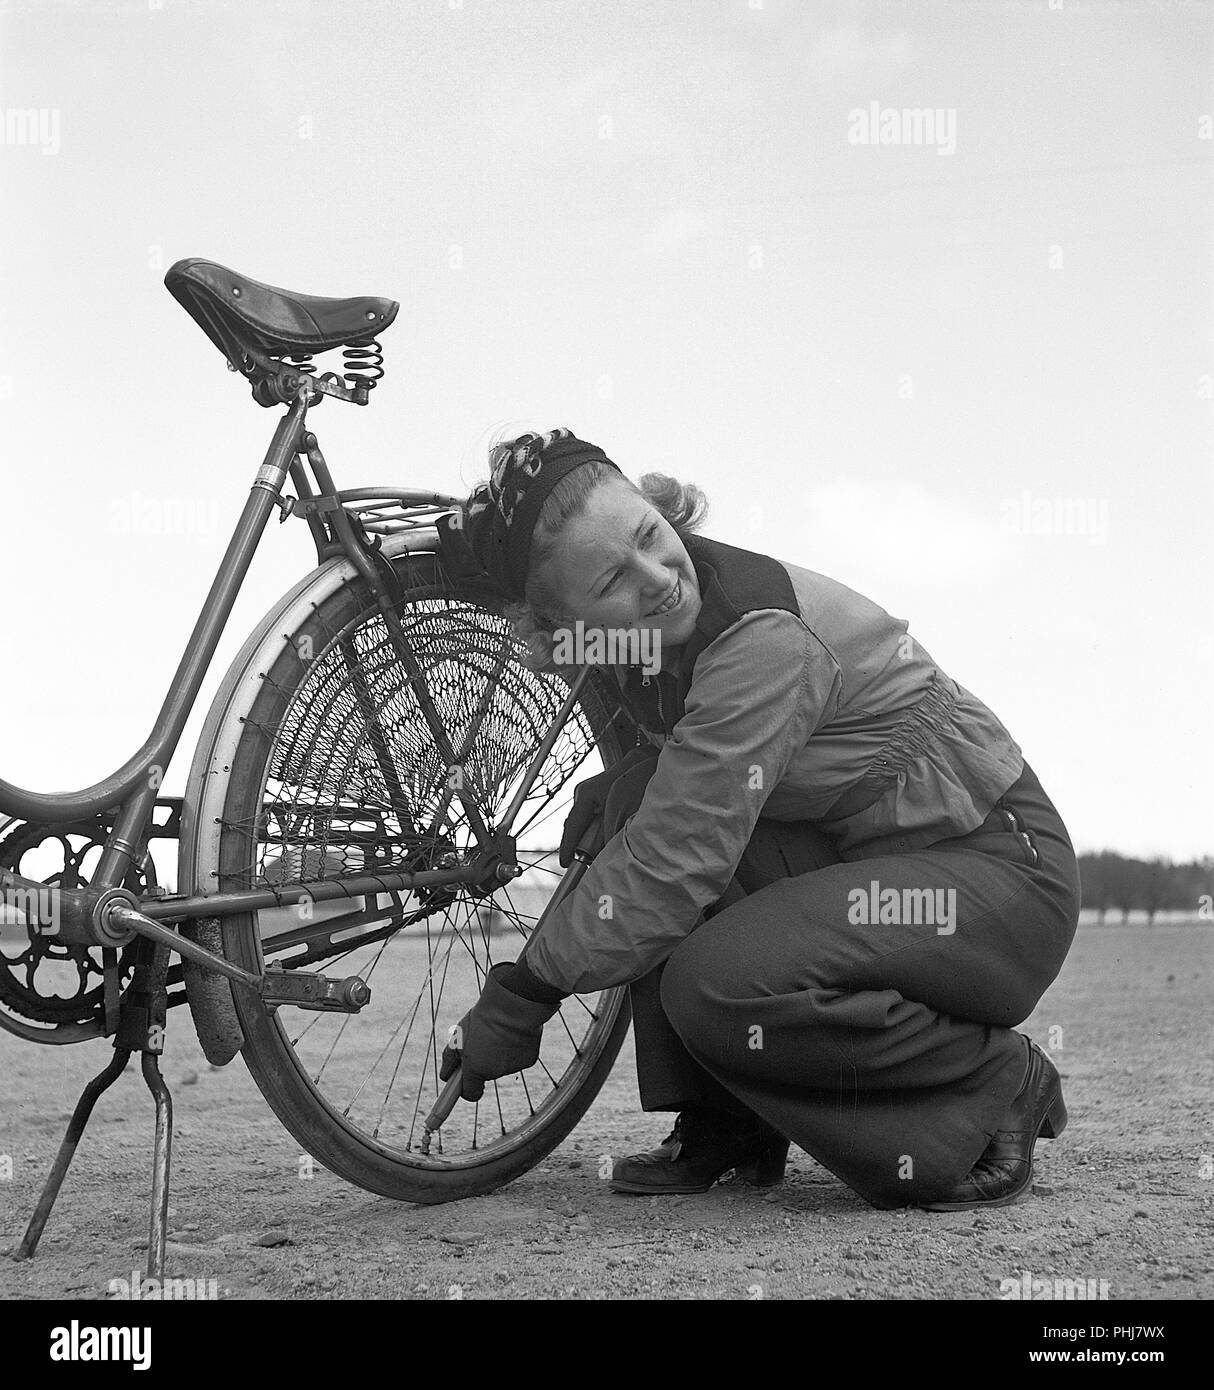 1940 pareja con una bicicleta. Una mujer joven está bombeando aire en el  neumático trasero de su bicicleta. Ella lleva la ropa deportiva típica de  los años 1940 con pantalones largos y